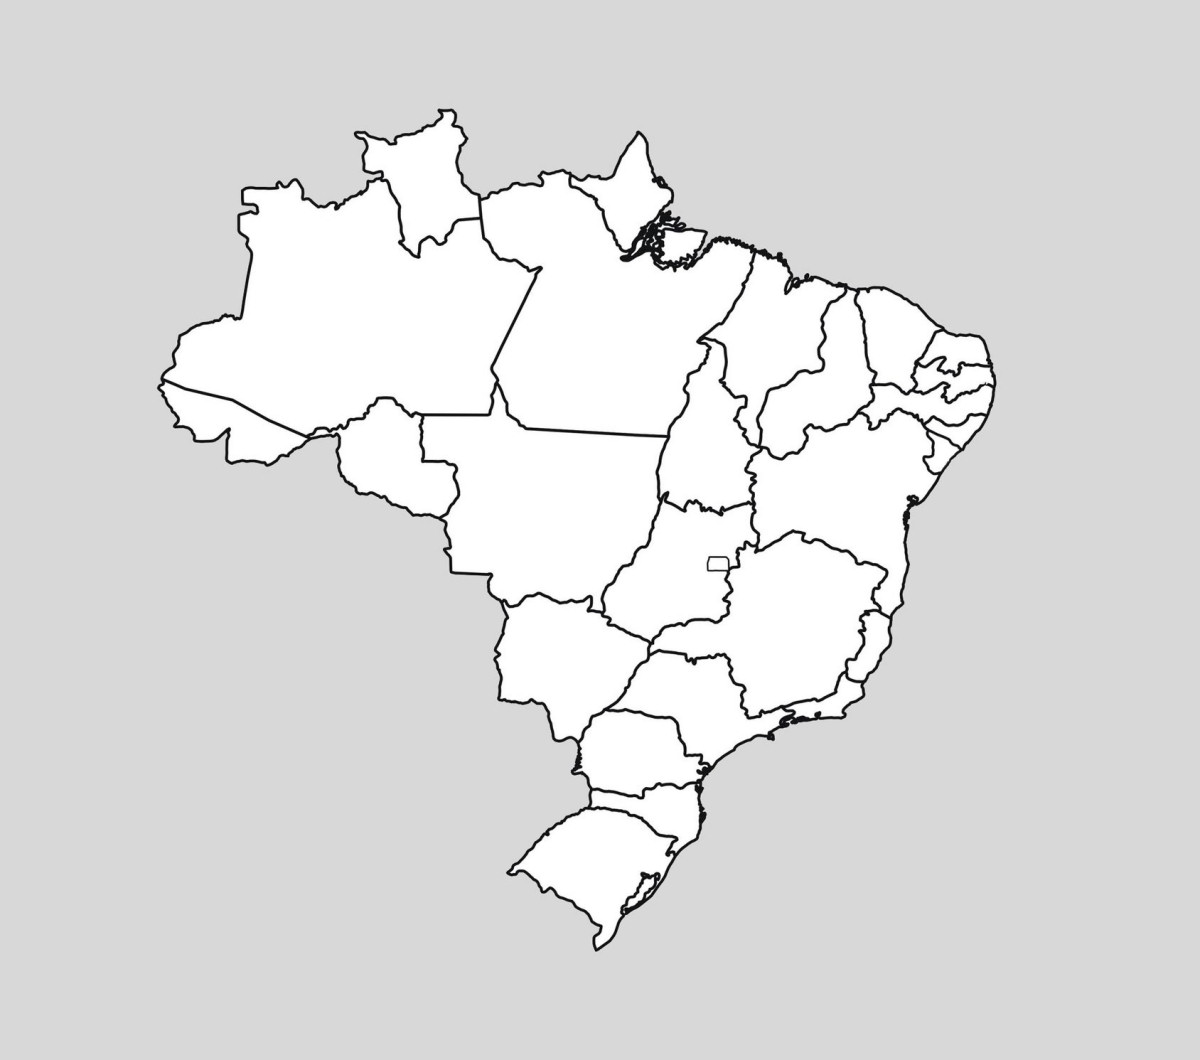 Mapa do Brasil em branco